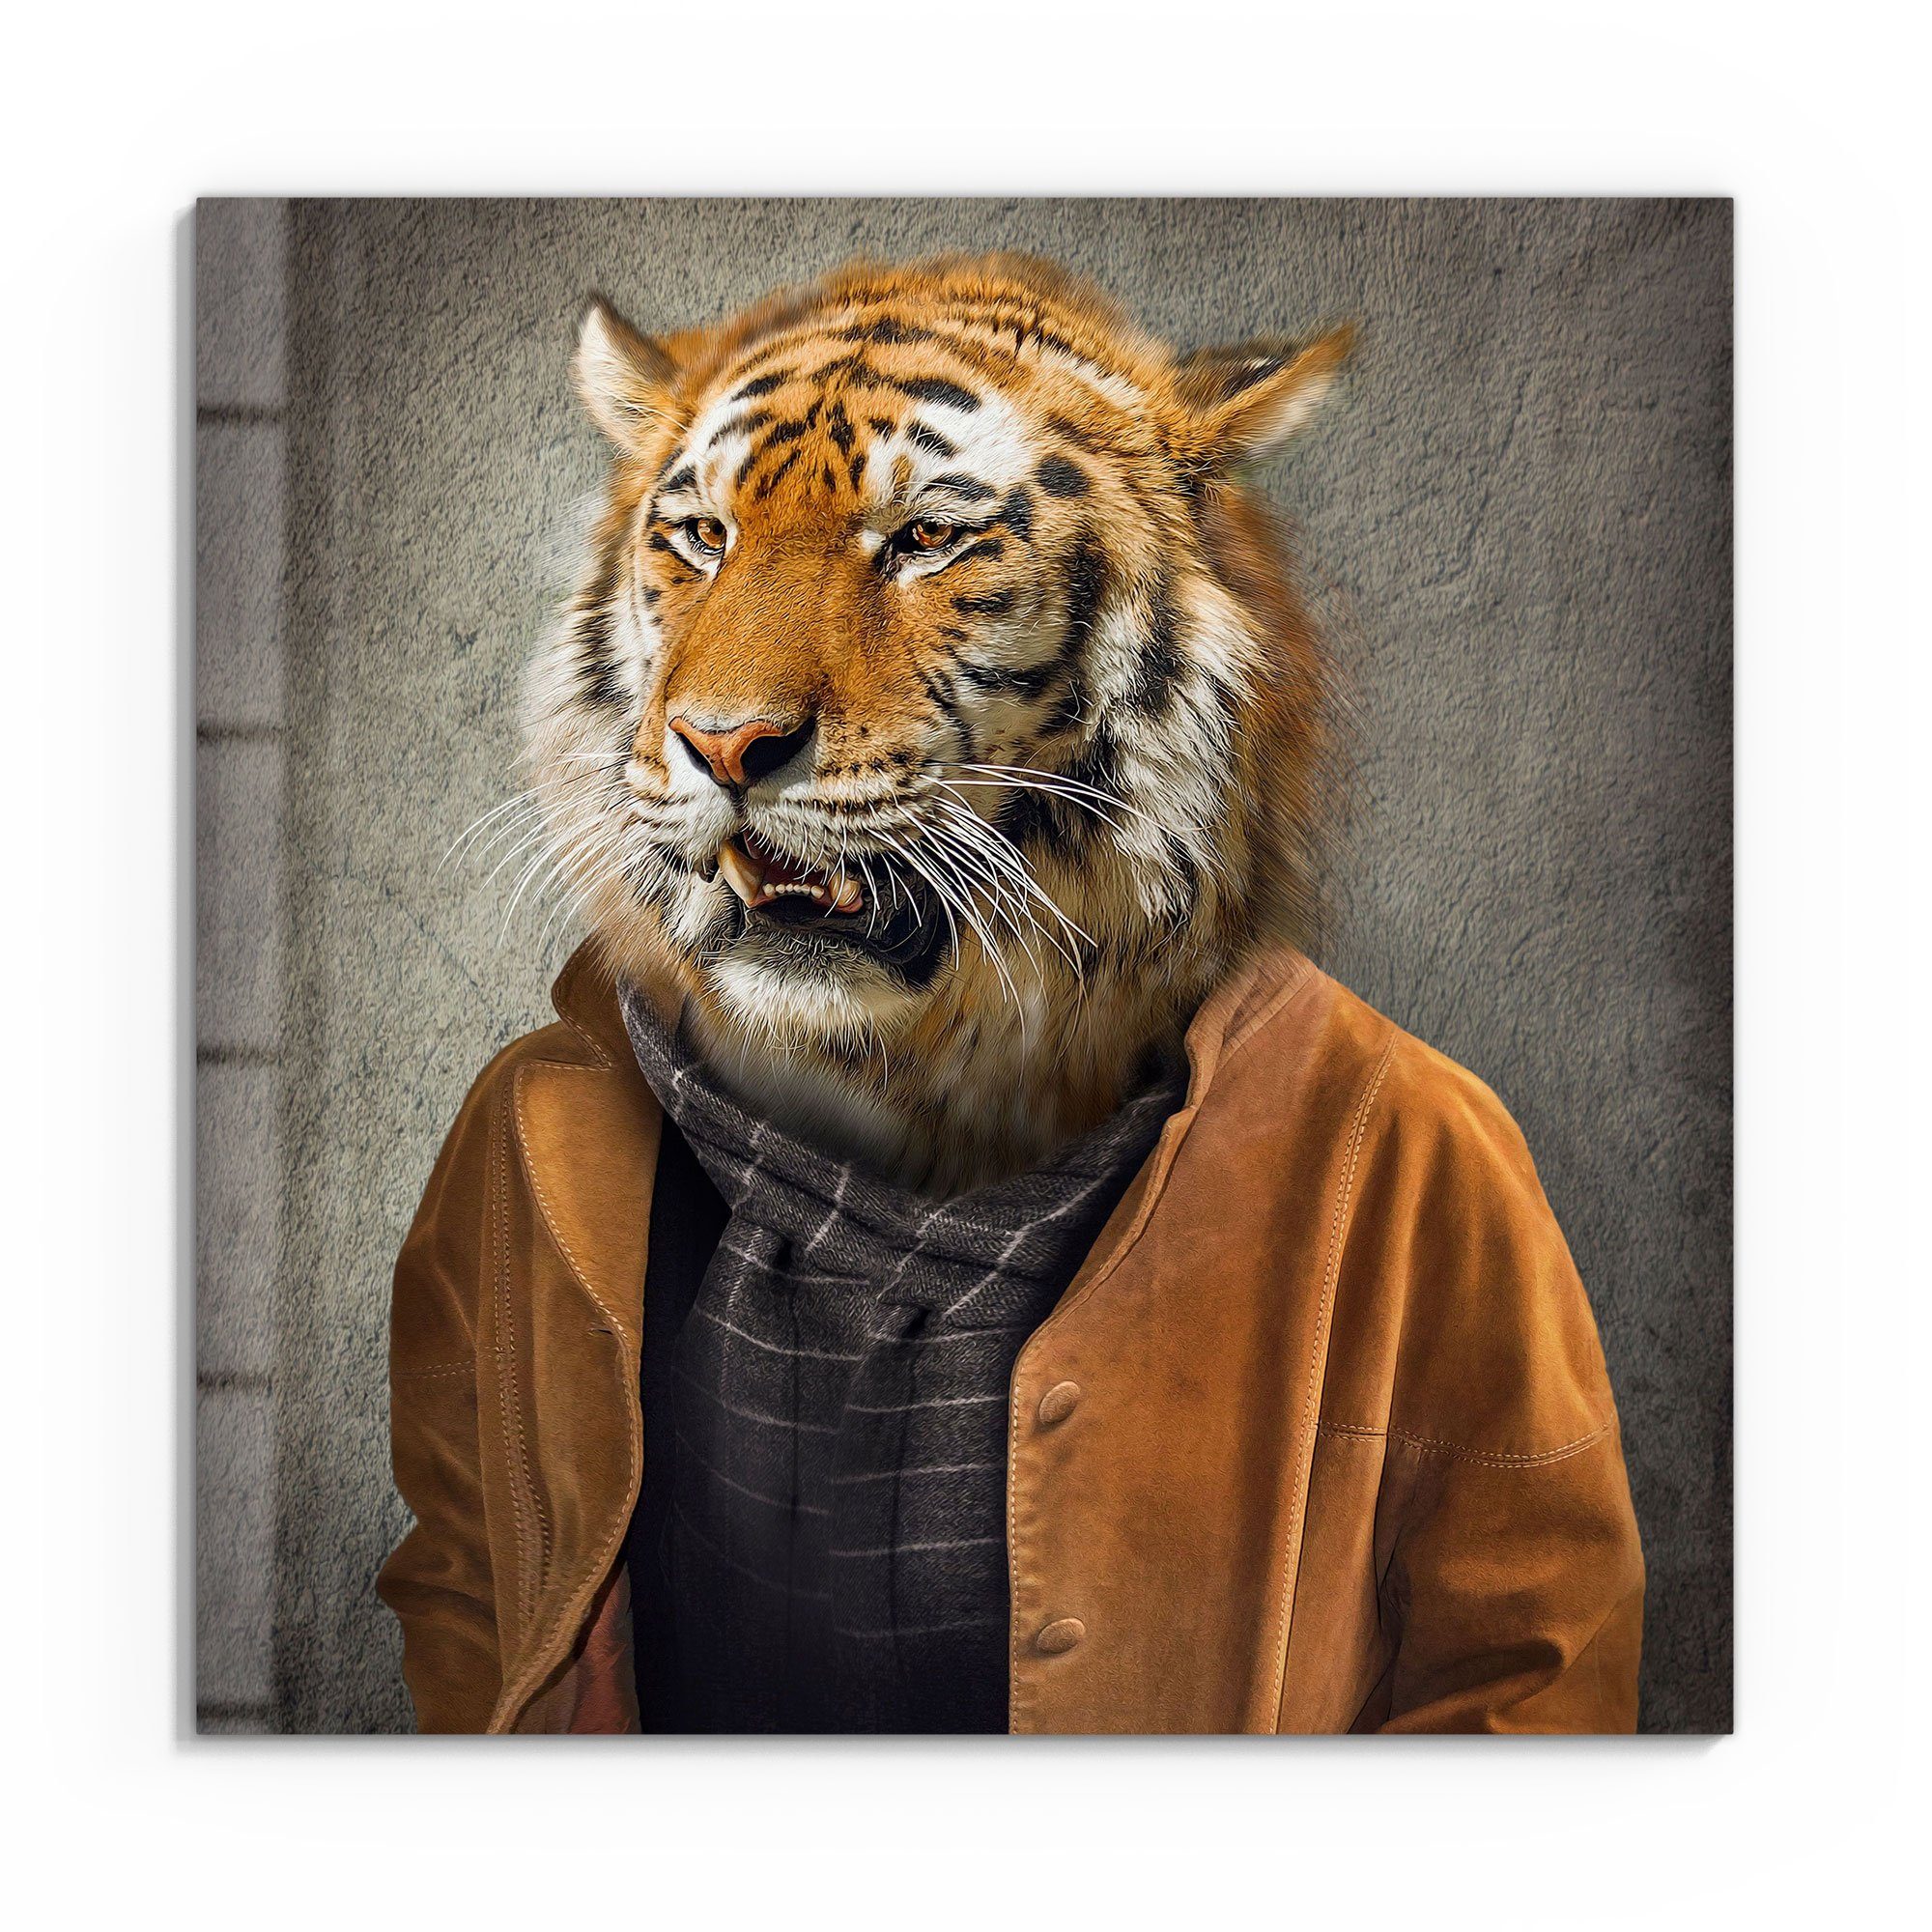 DEQORI Glasbild 'Tiger in Menschengestalt', 'Tiger in Menschengestalt',  Glas Wandbild Bild schwebend modern